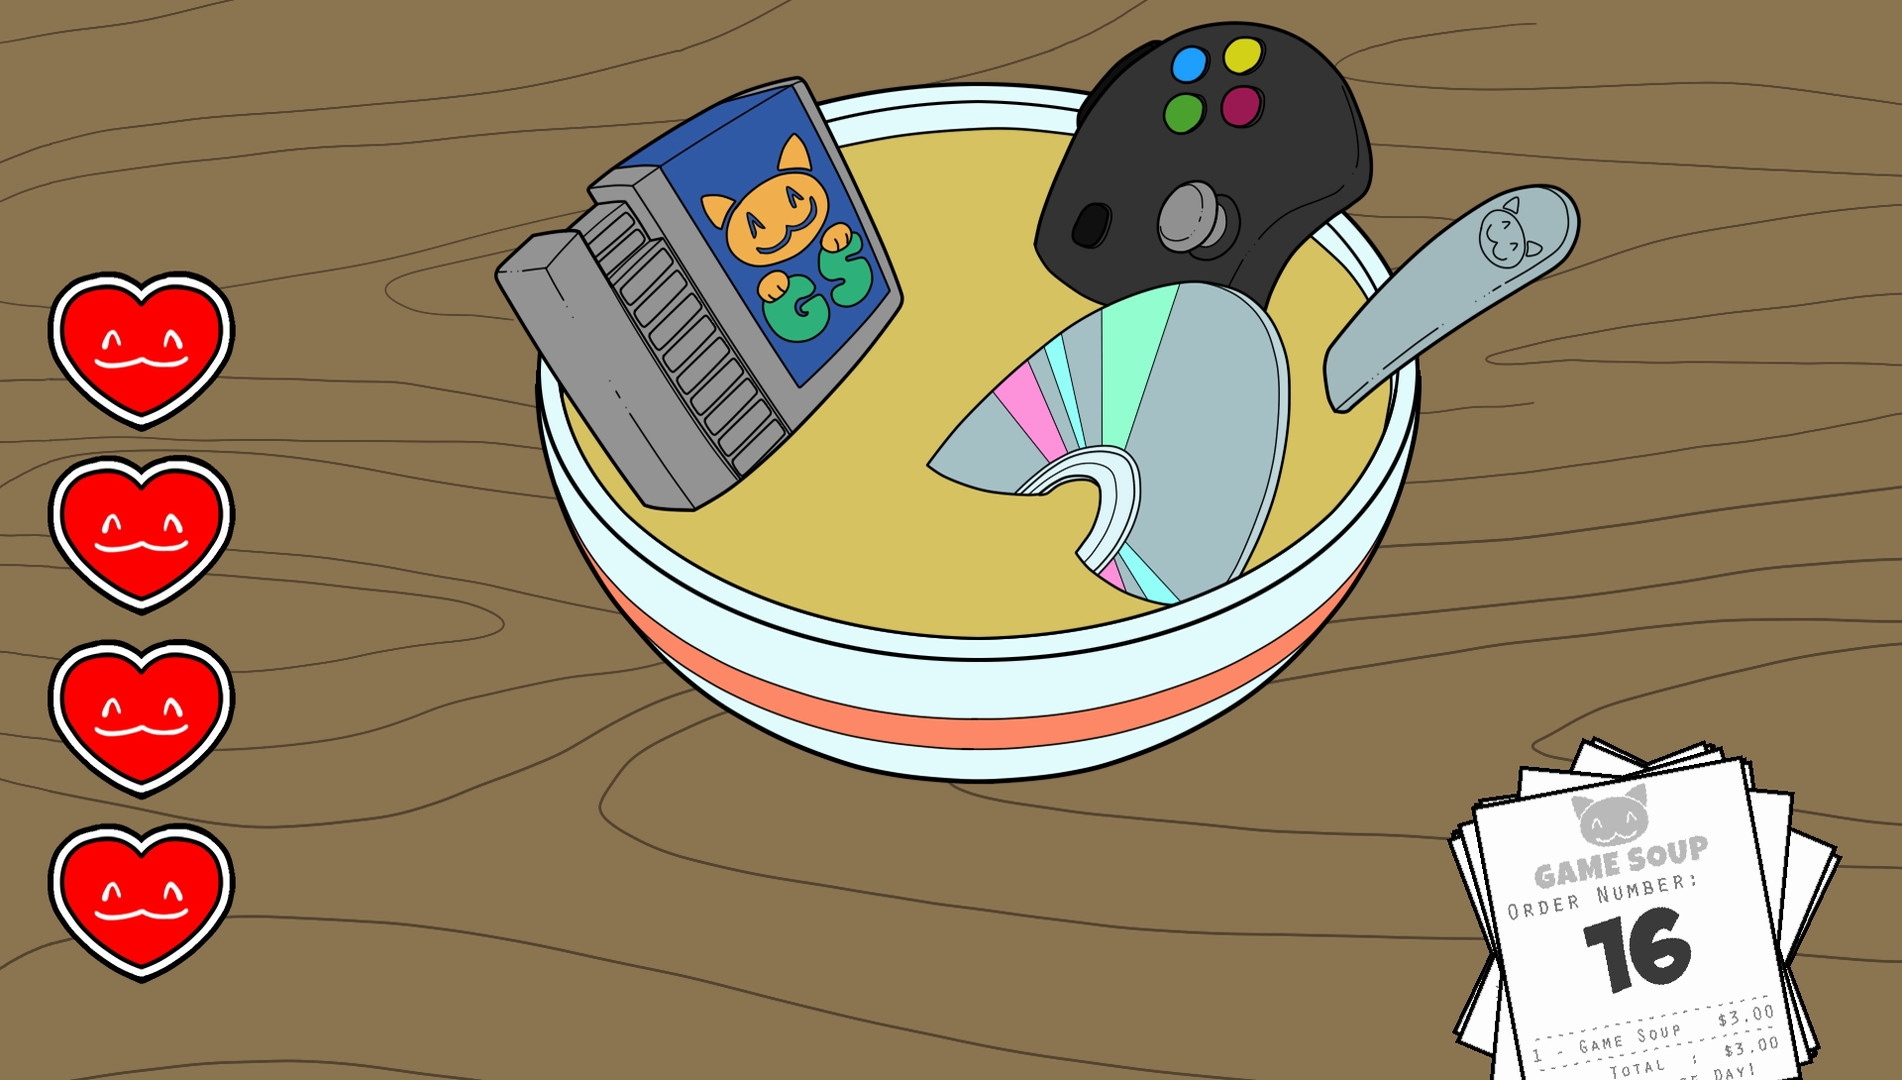 Скриншот из игры Game Soup под номером 3